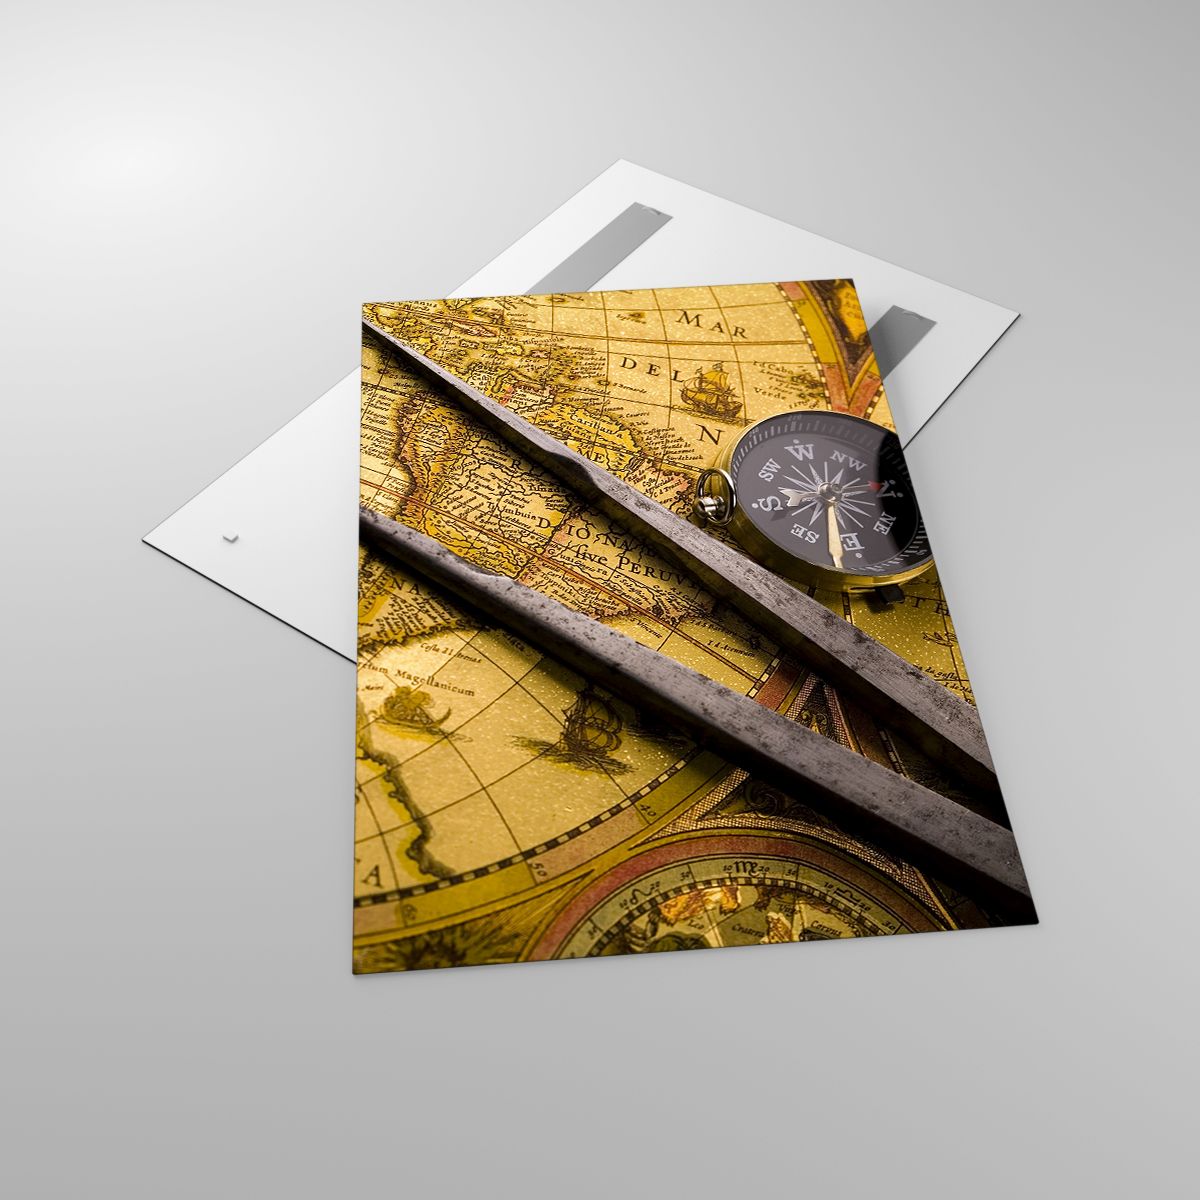 Glasbild Kompass, Glasbild Weltkarte, Glasbild Reisen, Glasbild Reisen, Glasbild Jahrgang